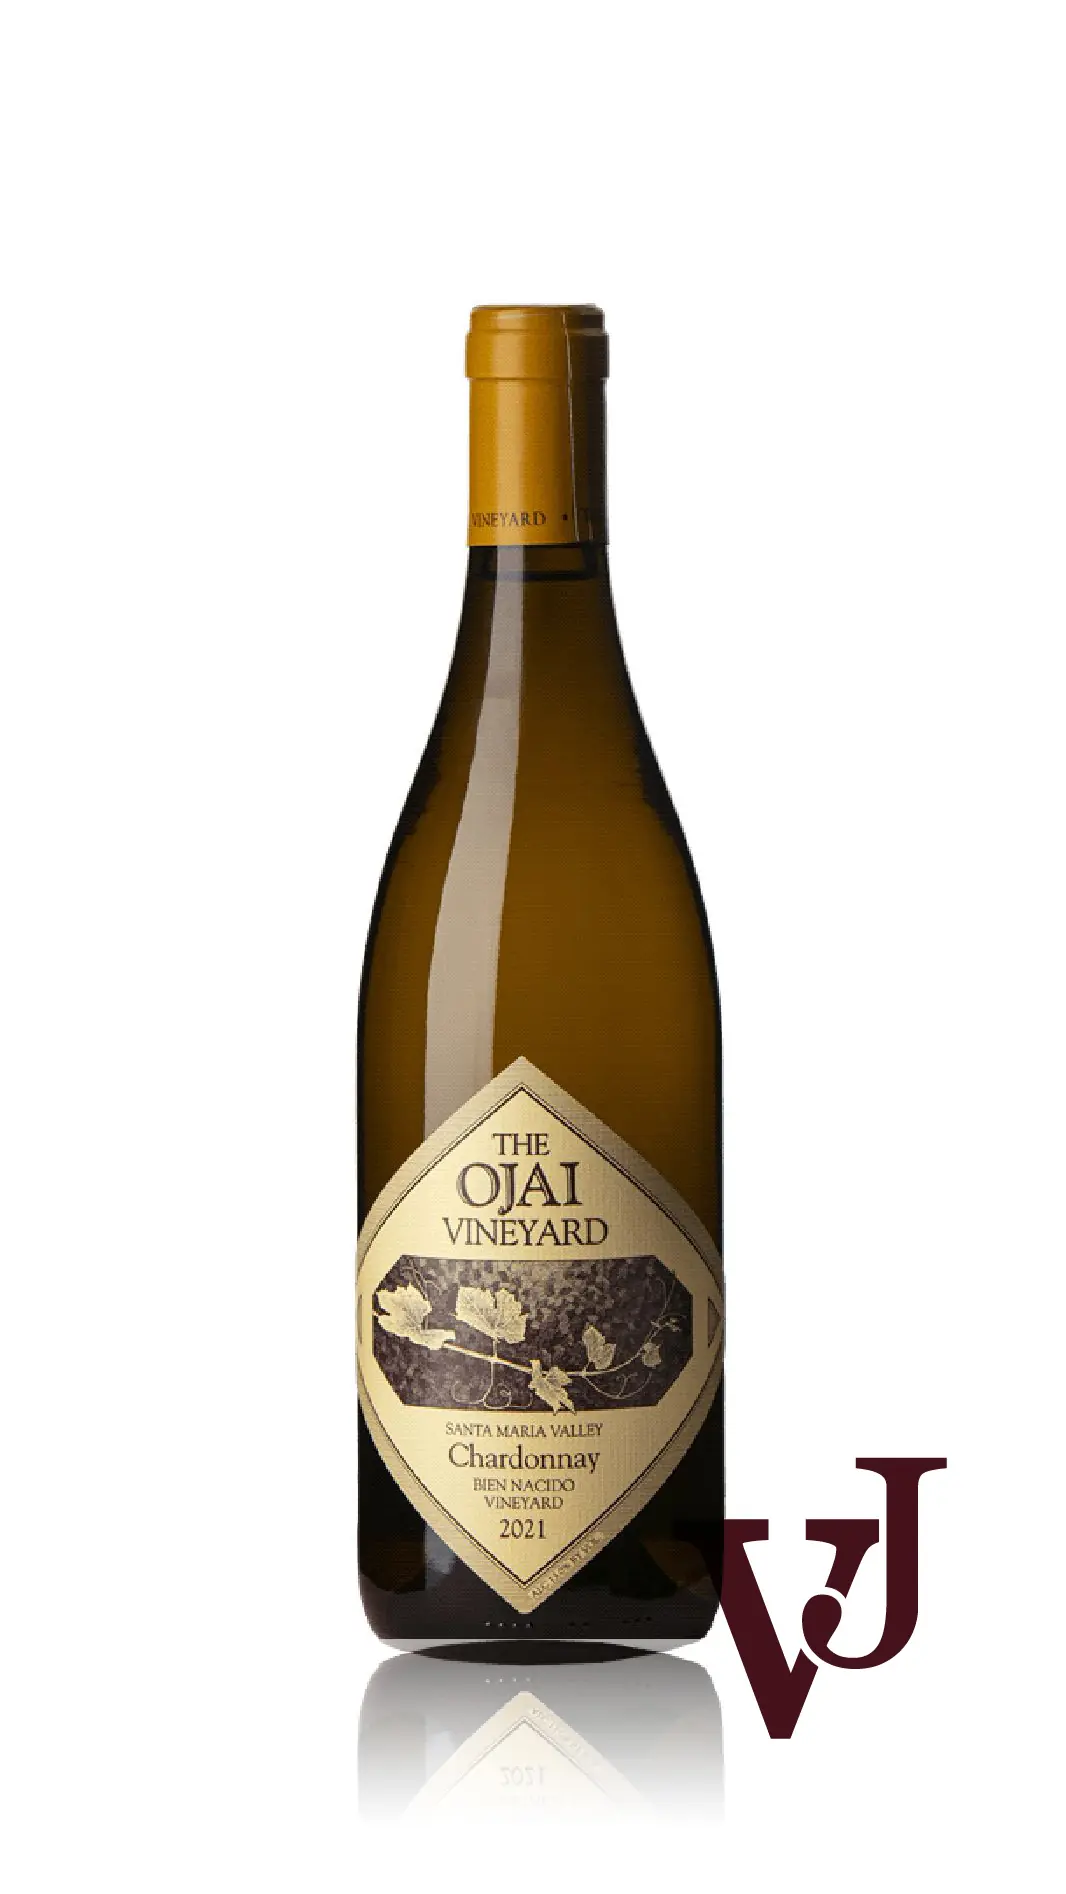 Vitt Vin - Ojai Bien Nacido Chardonnay 2021 artikel nummer 9393501 från producenten Ojai Vineyard från området USA - Vinjournalen.se